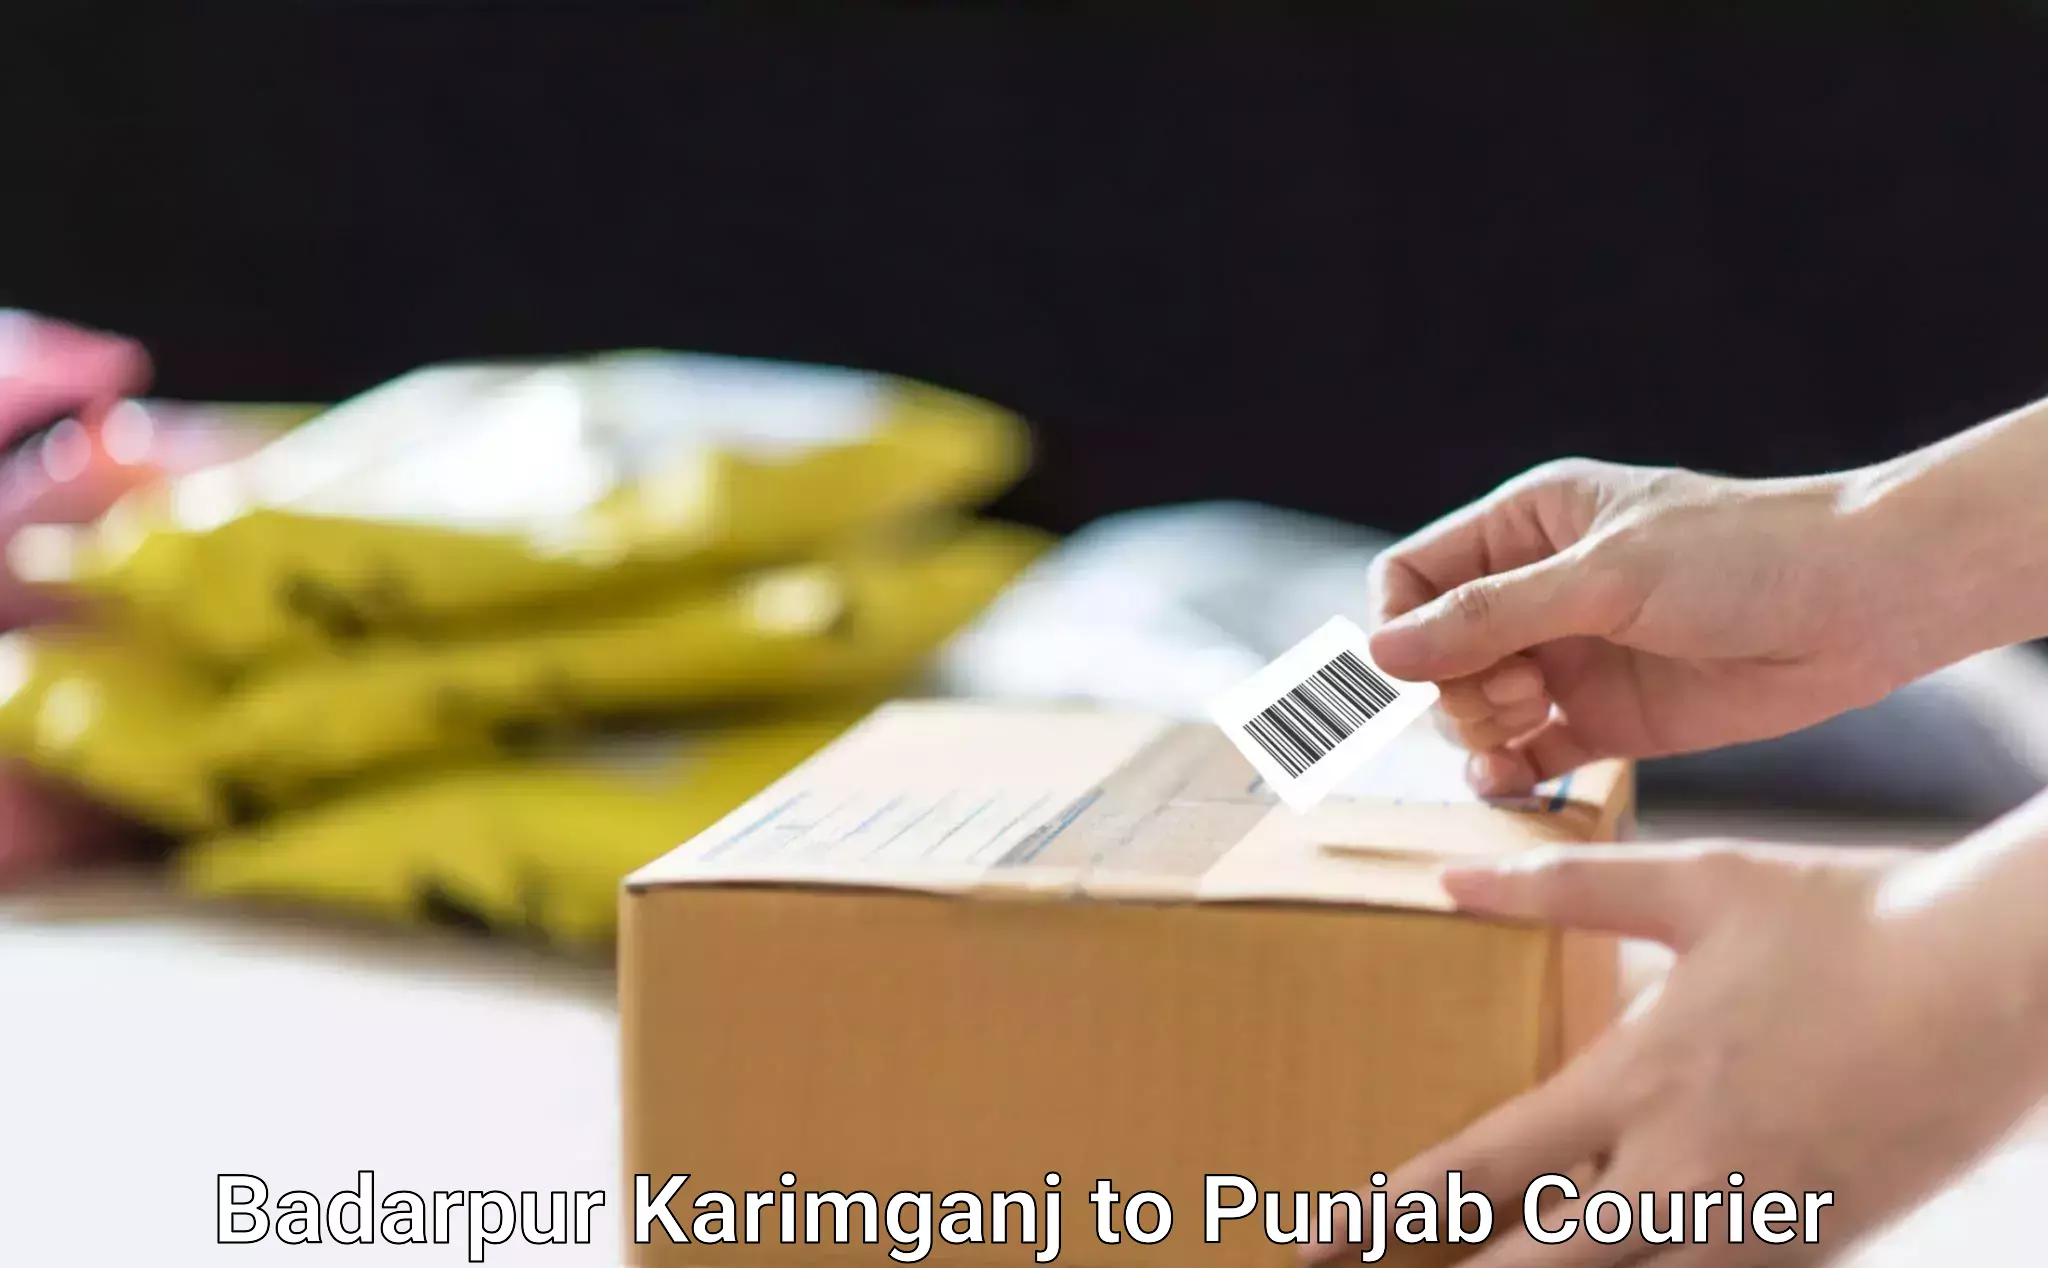 Quality courier partnerships Badarpur Karimganj to Fatehgarh Sahib